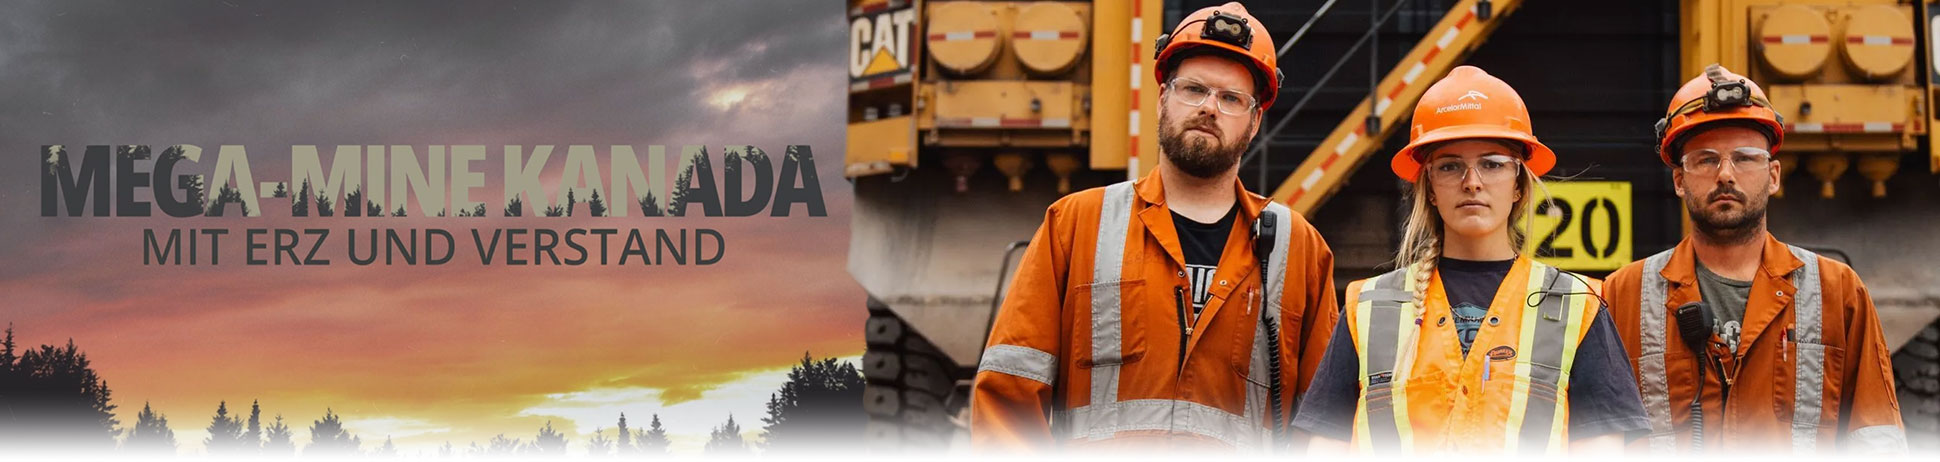 Mega-Mine Kanada - Mit Erz und Verstand